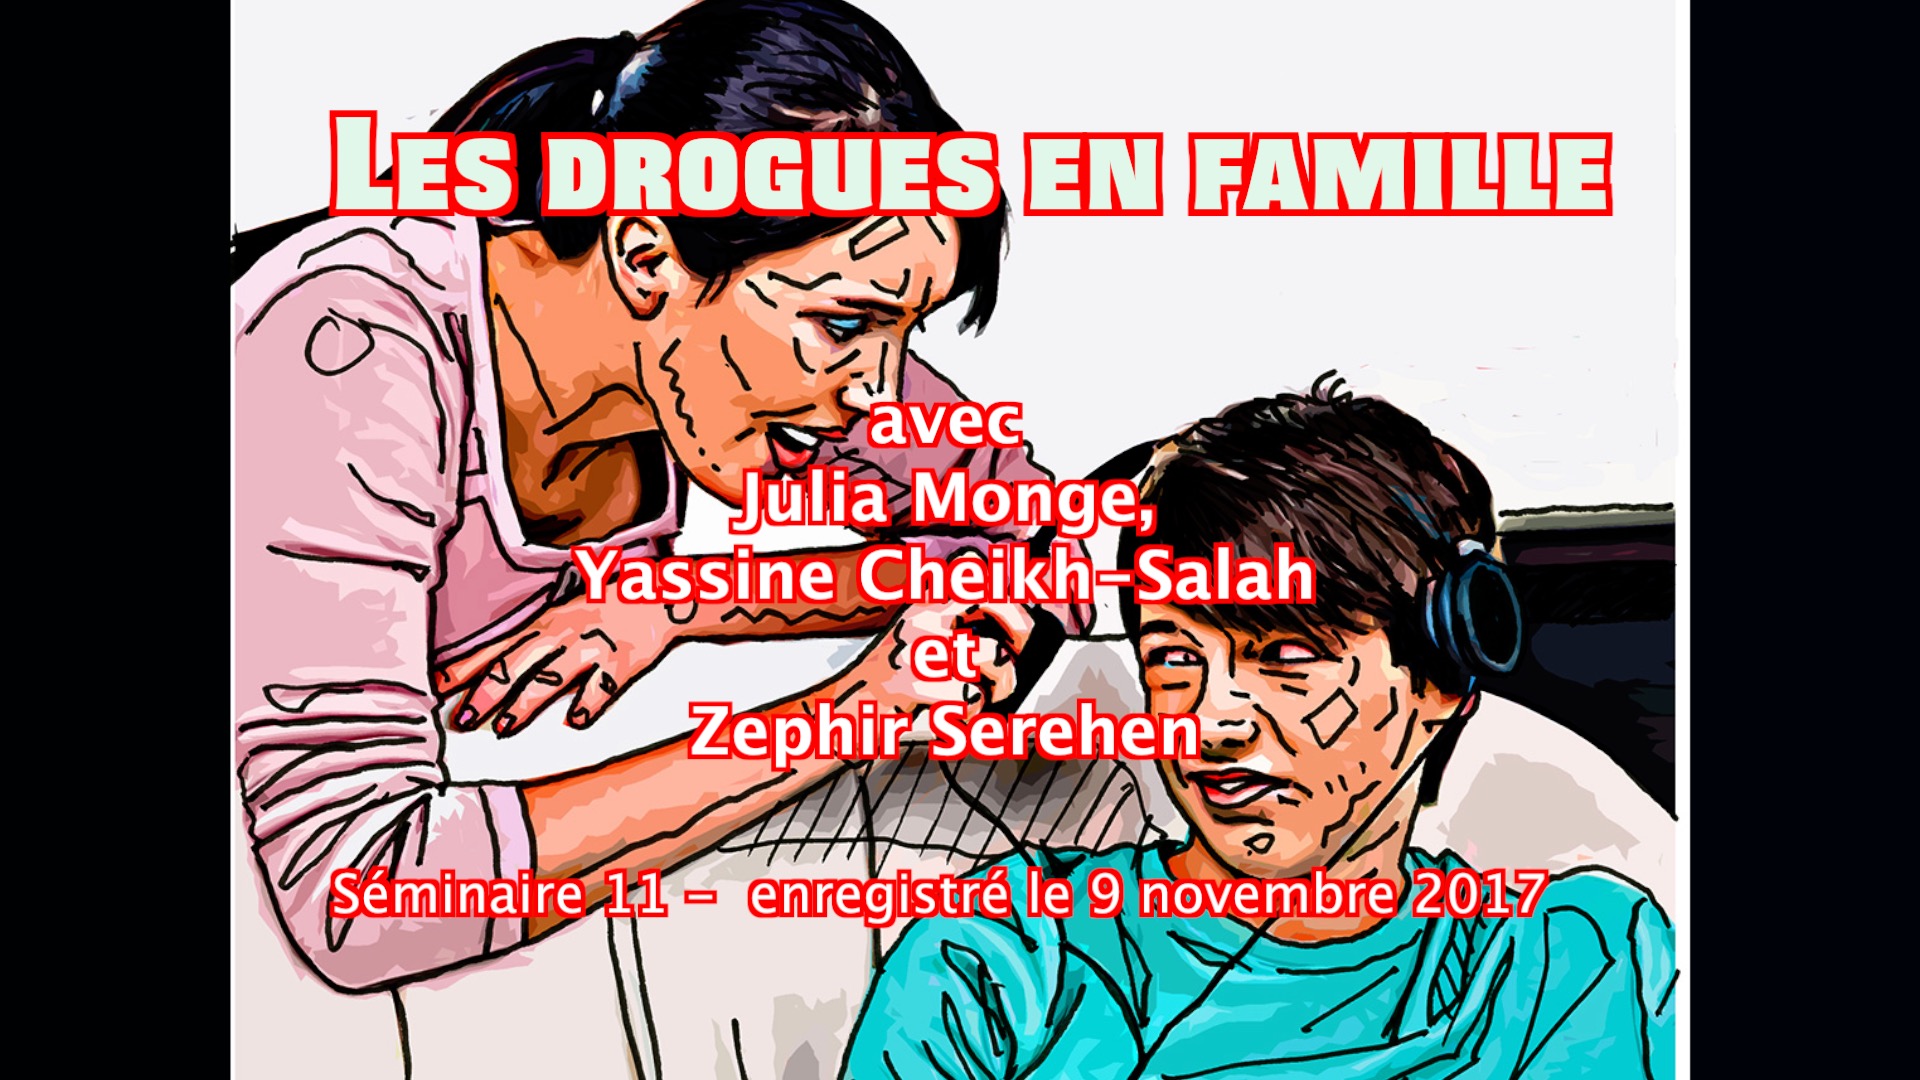 11 - Les drogues en famille